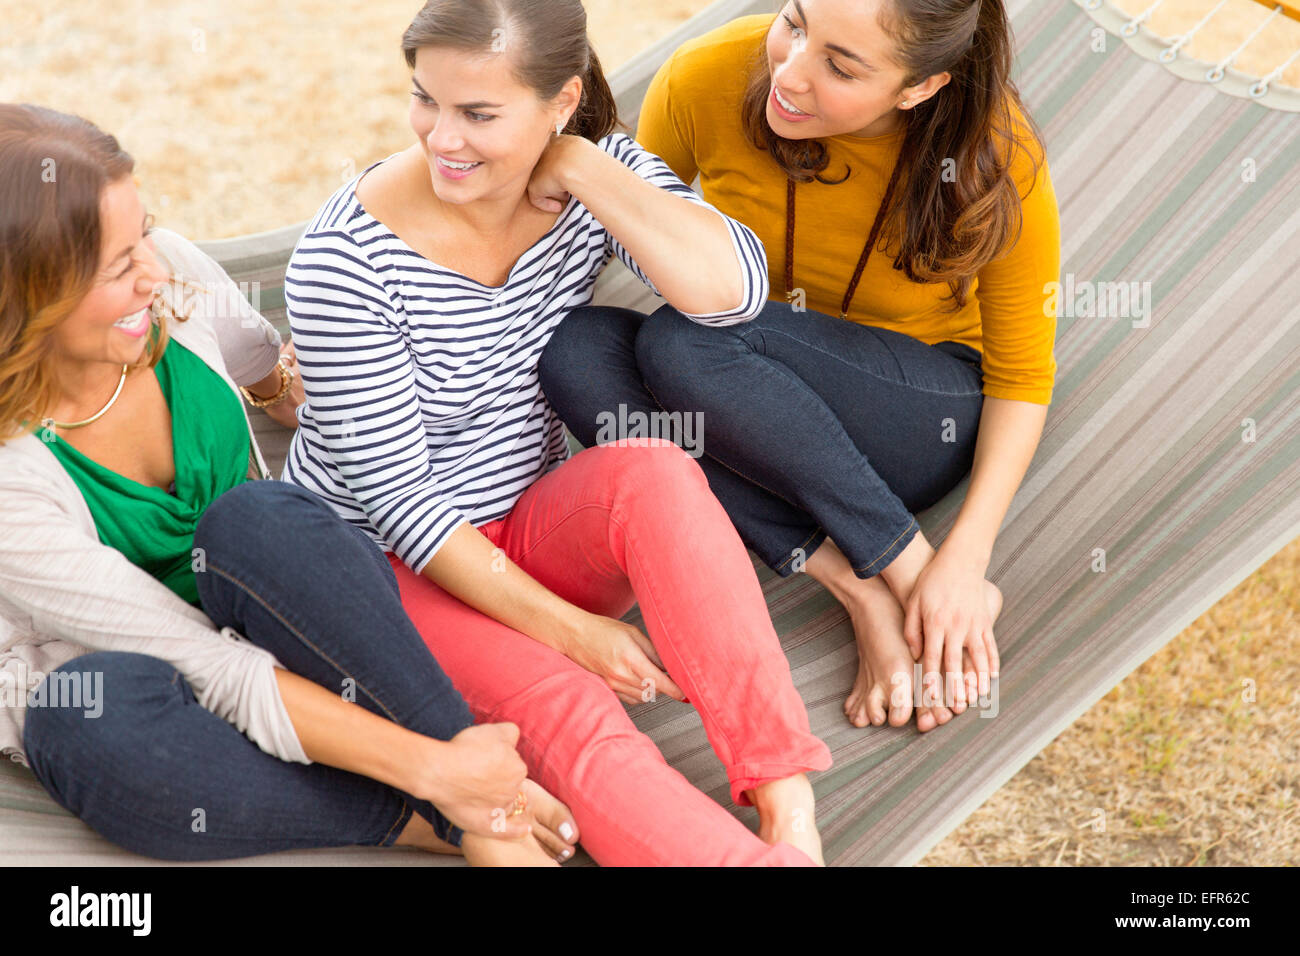 Women sitting on hammock Stock Photo